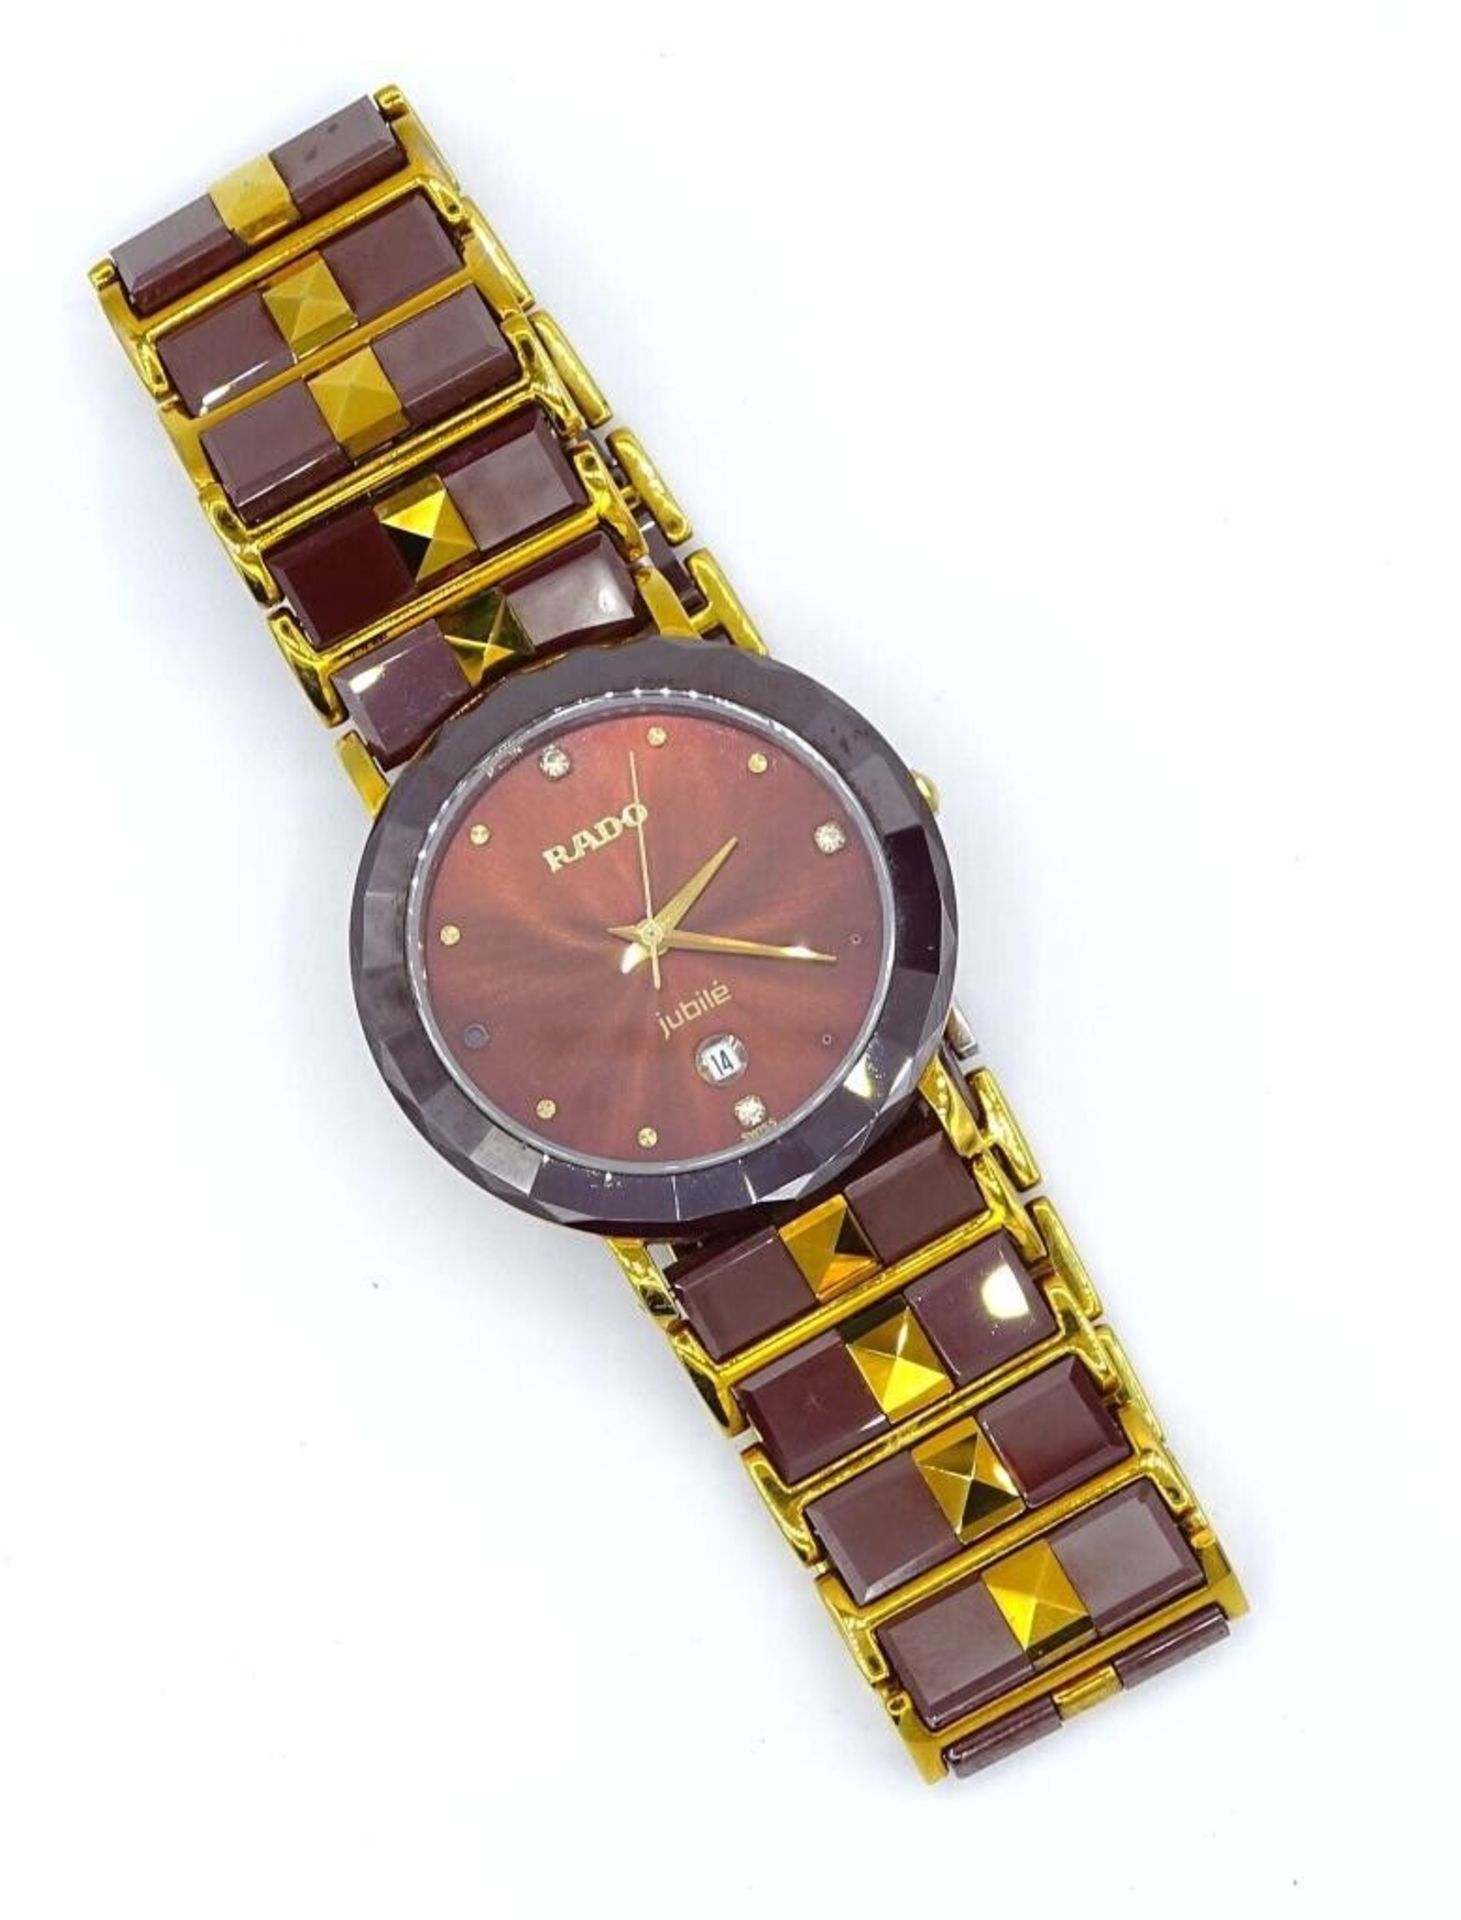 Armbanduhr "Rado-Jubilé" Quarz, Saphirglas, Unisex, auf Deckel: 180.0286.5, facettiertes Gehäuse, - Image 2 of 6